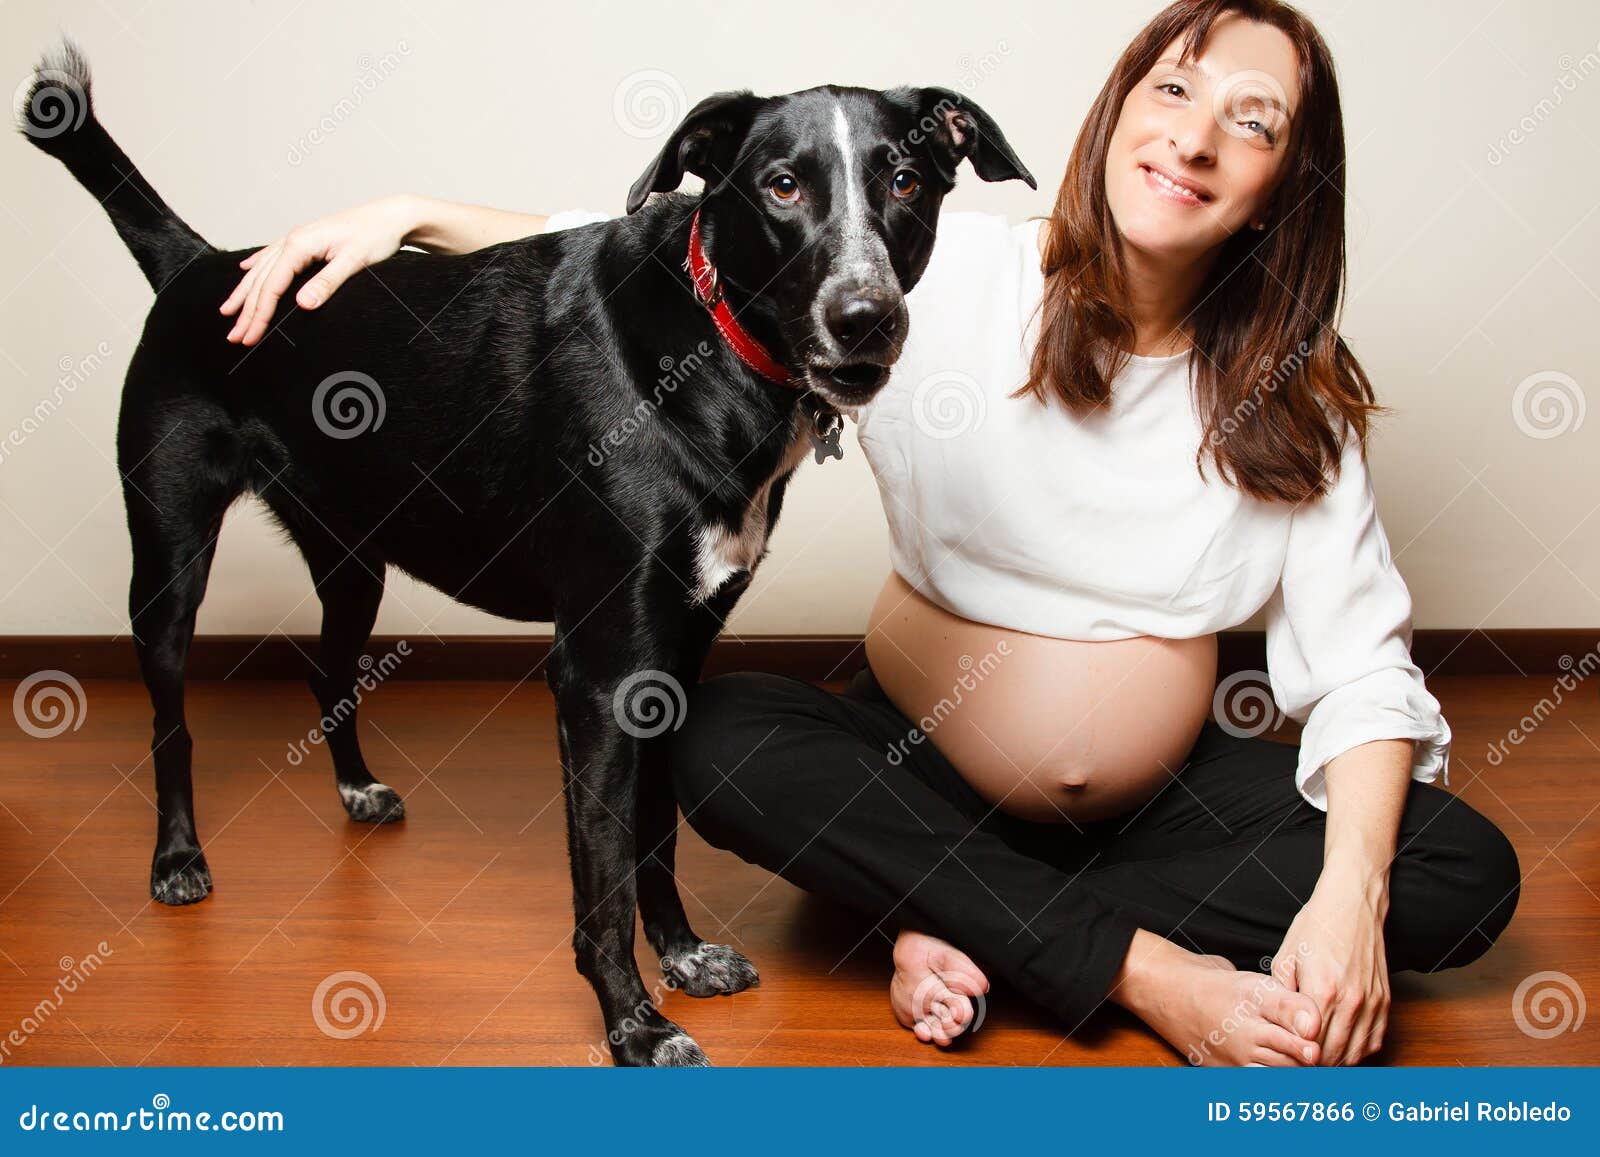 狗狗懷孕有什麼特徵以及該注意哪些事項？|搖滾尾巴